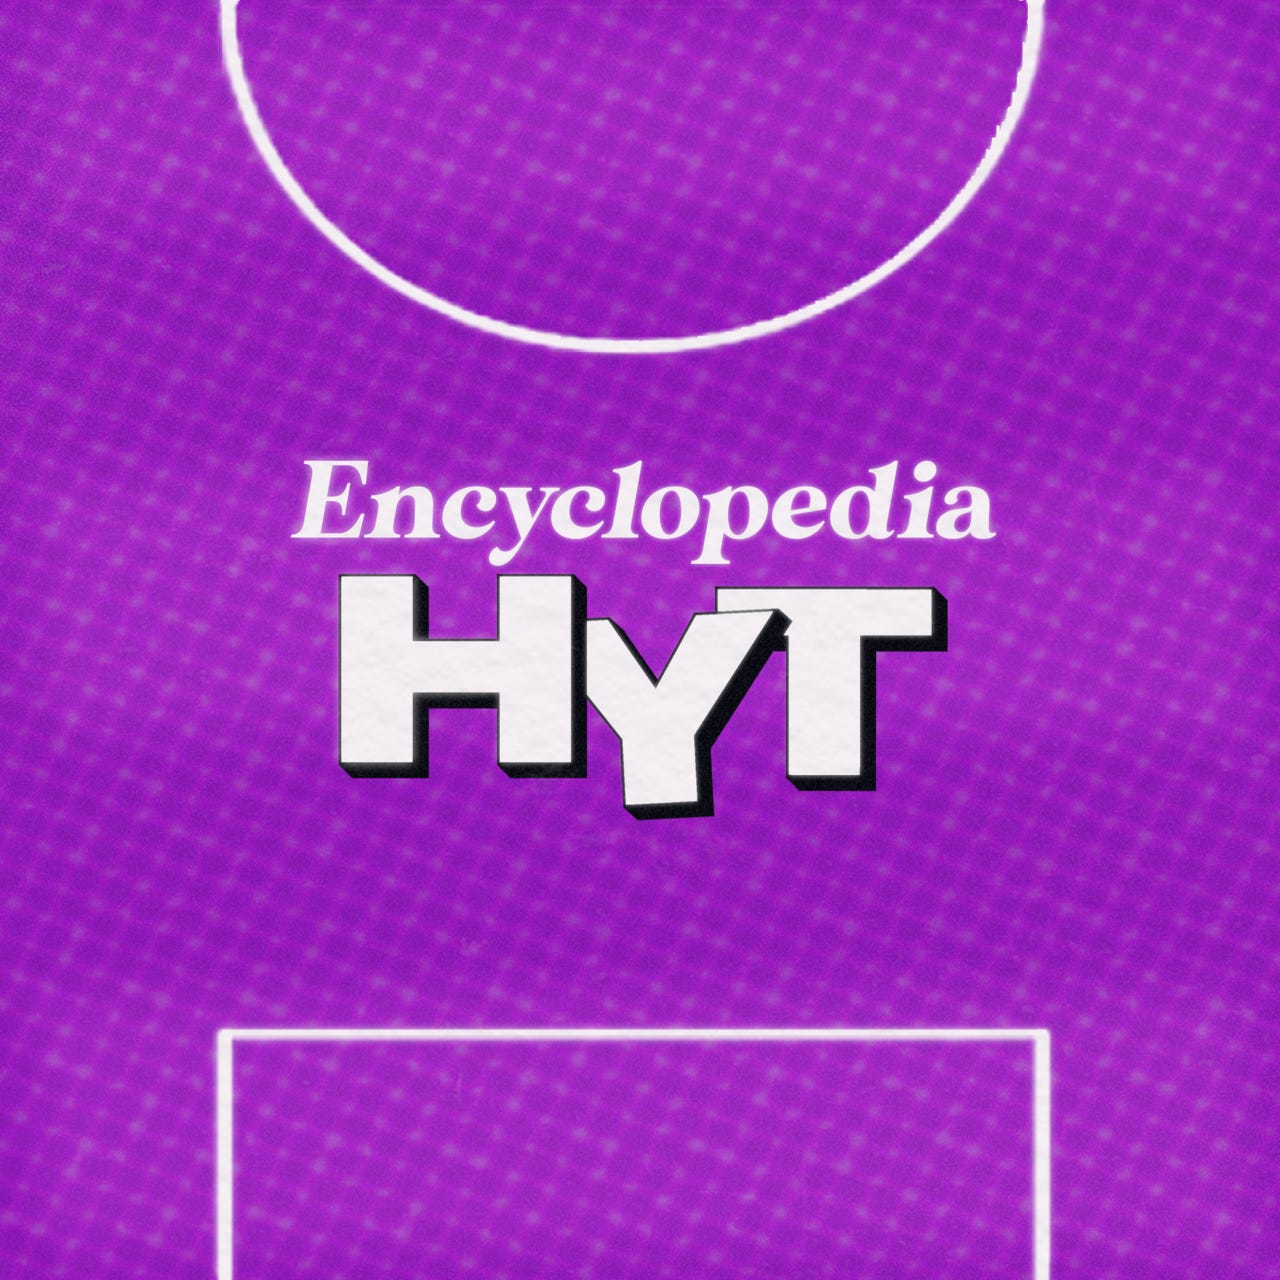 Encyclopedia HYT